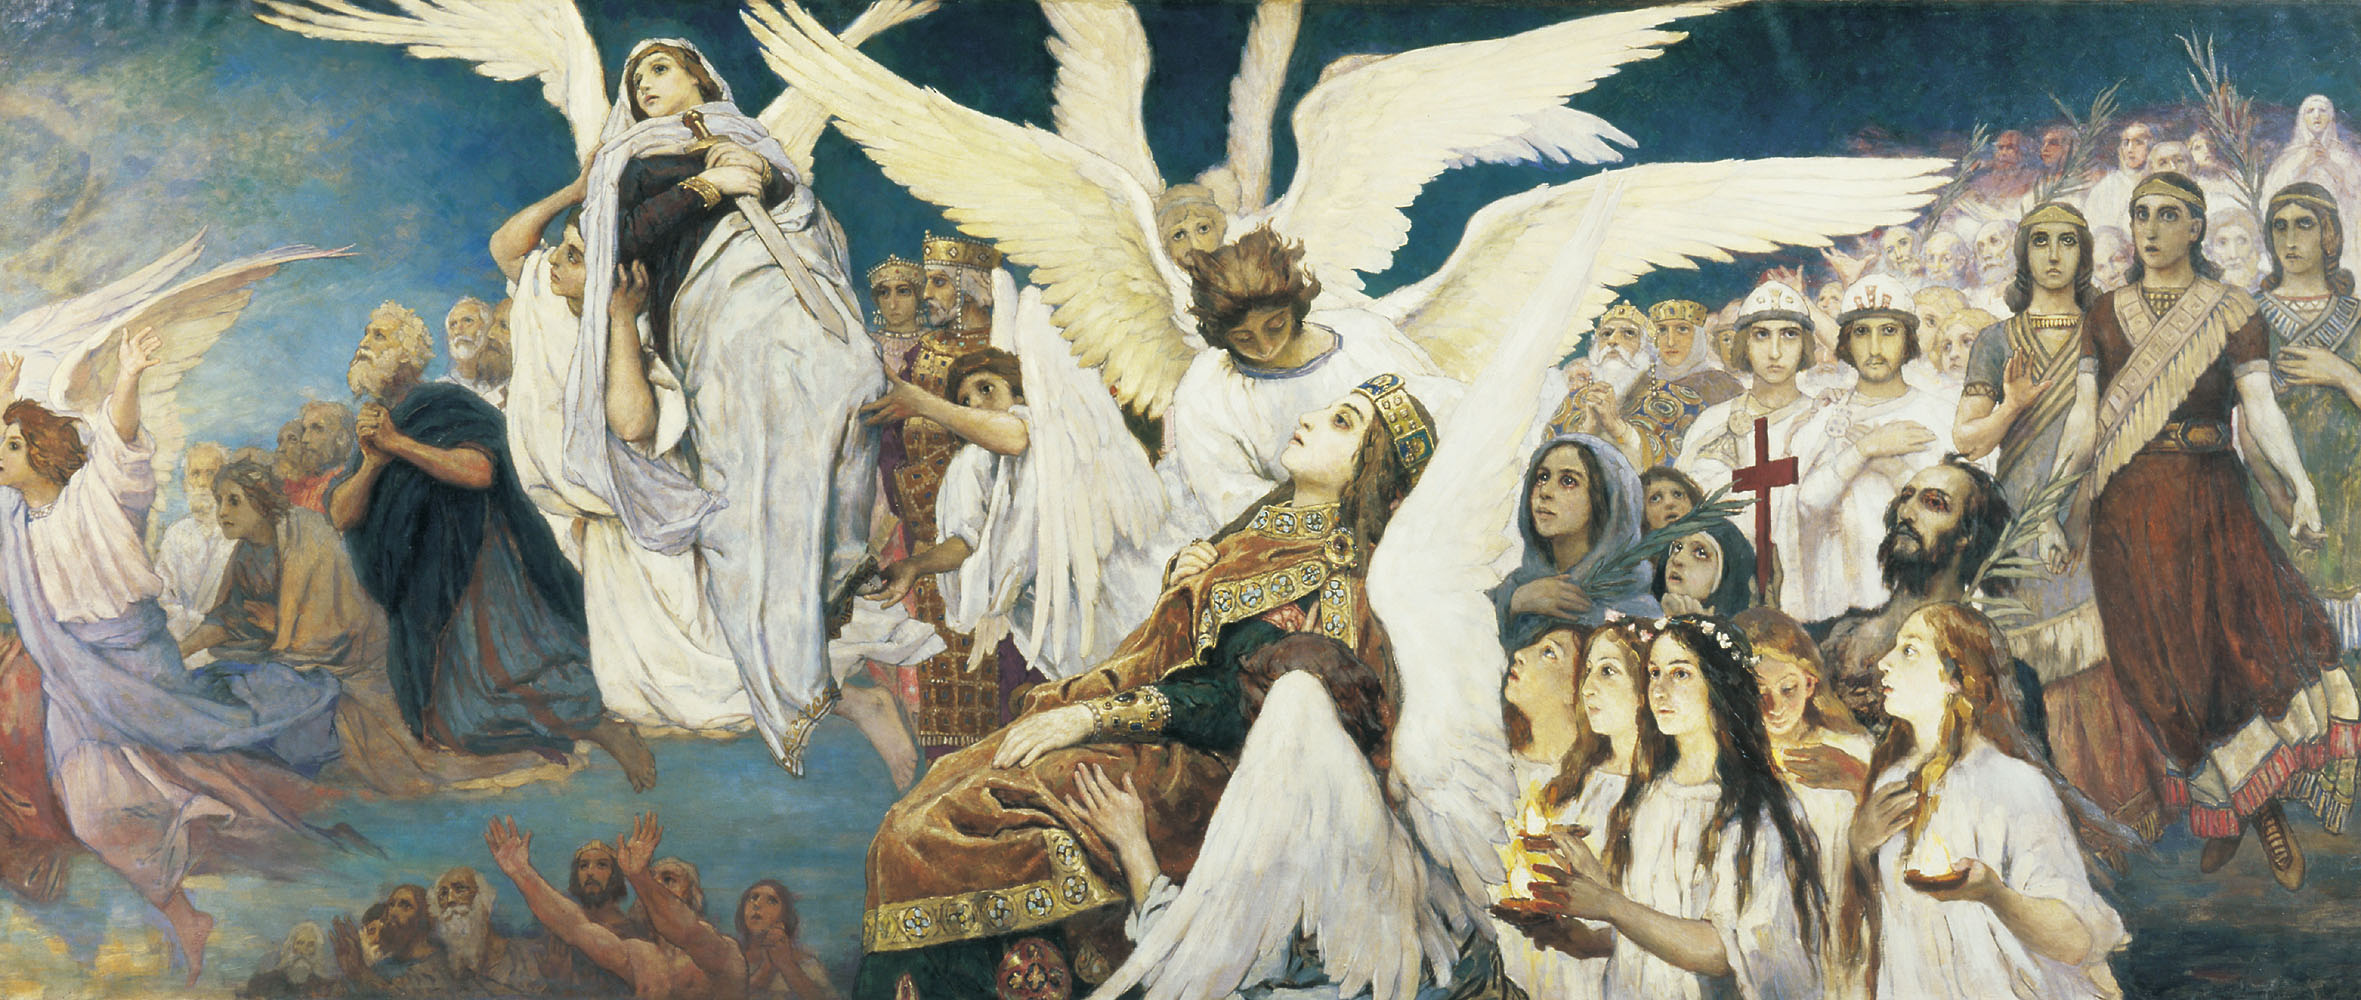 Васнецов фрески Владимирского собора в Киеве